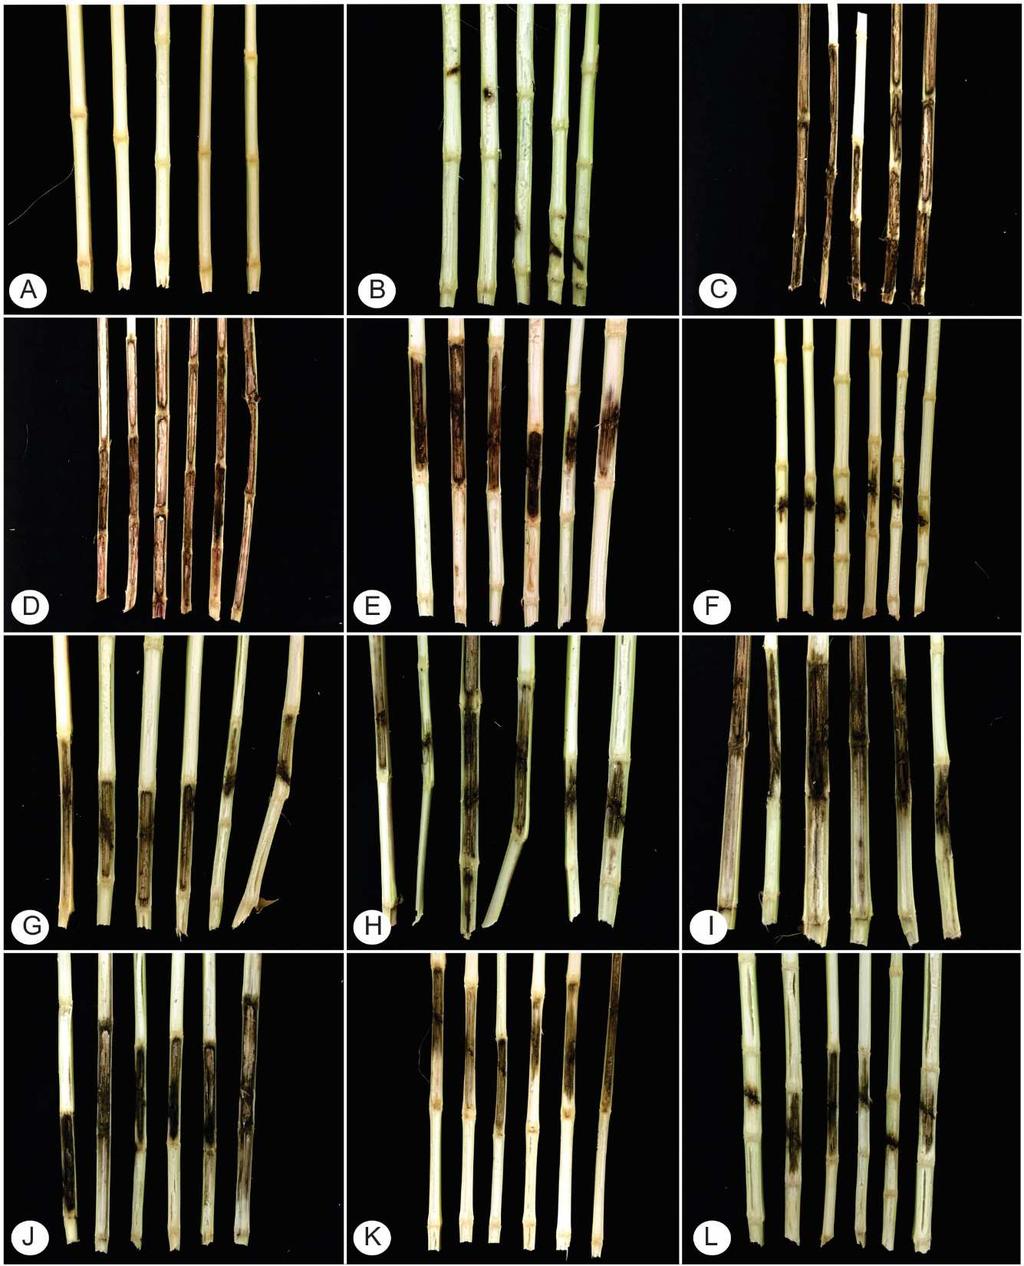 Todos os isolados testados no presente estudo foram patogênicos e causaram lesões que comprometeram o desenvolvimento da planta e consequentemente a sua produtividade (Figura 1). O fungo P.